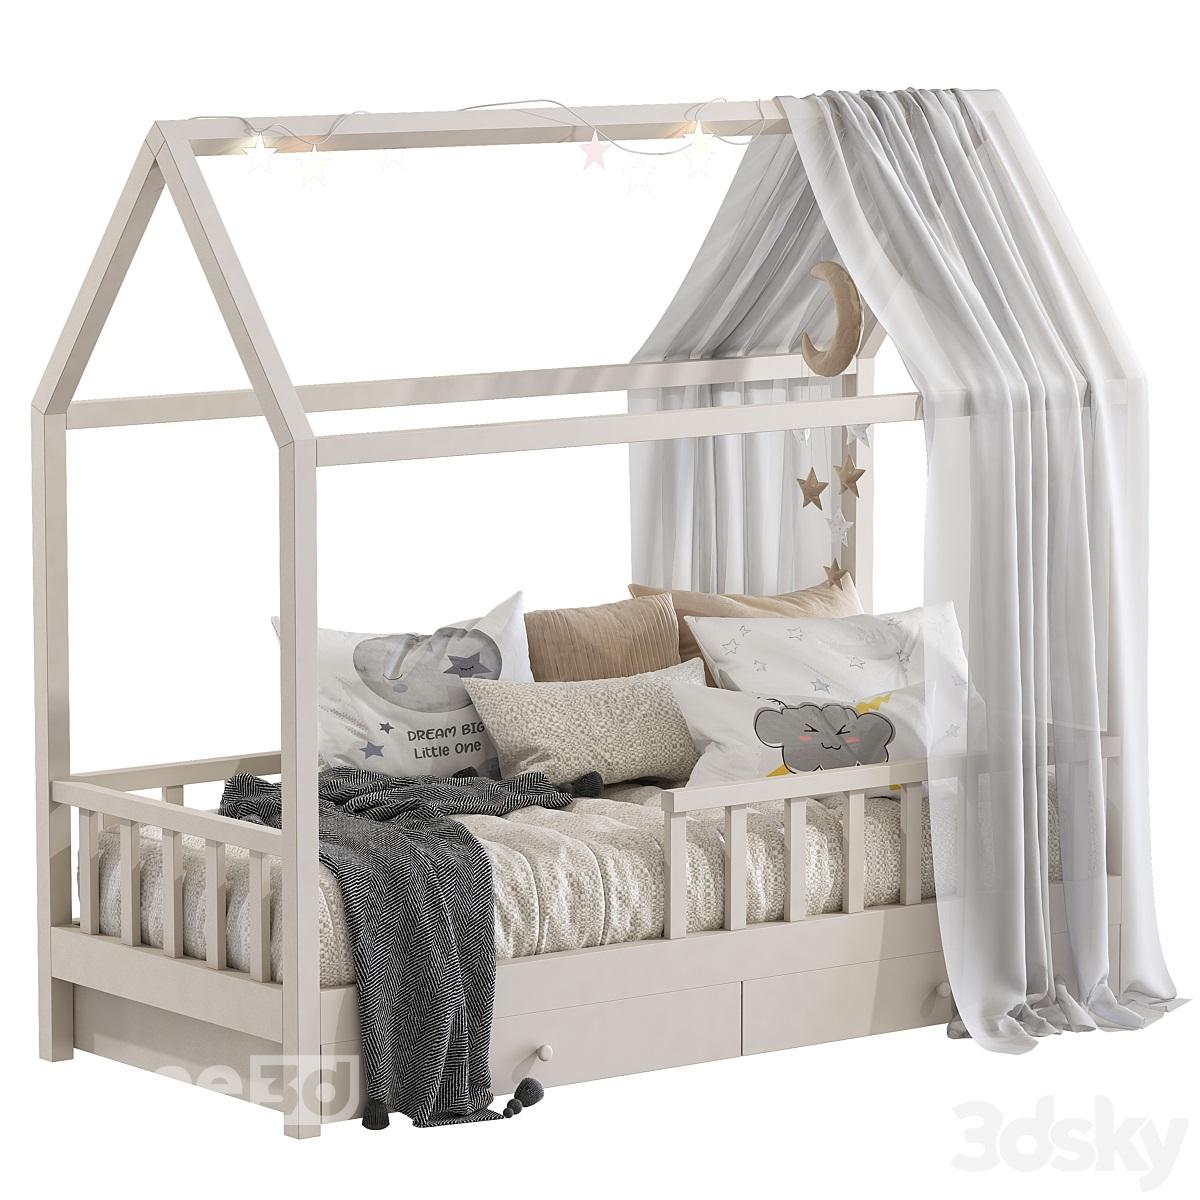 آبجکت تخت خواب چوبی برای اتاق کودک برند Kinburg